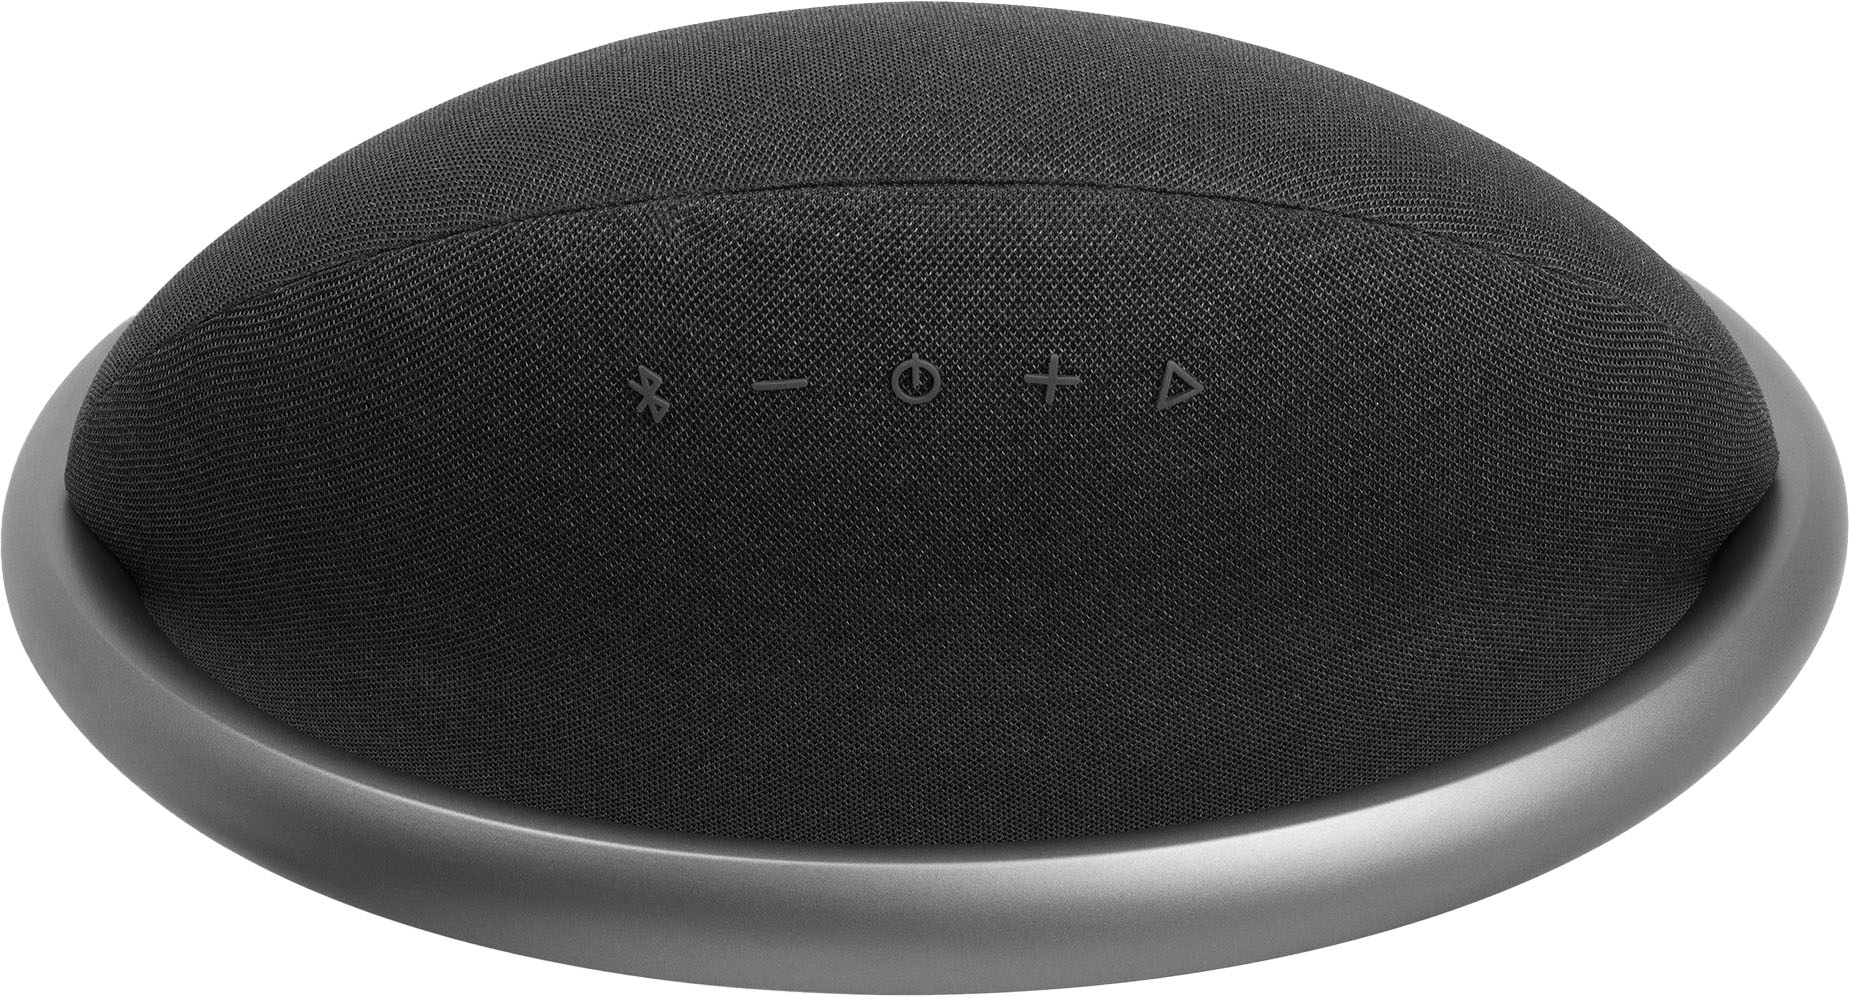 Speaker Portable JBL Buy Black 7 HKOS7BLKAM Stereo Best Studio Bluetooth - Onyx